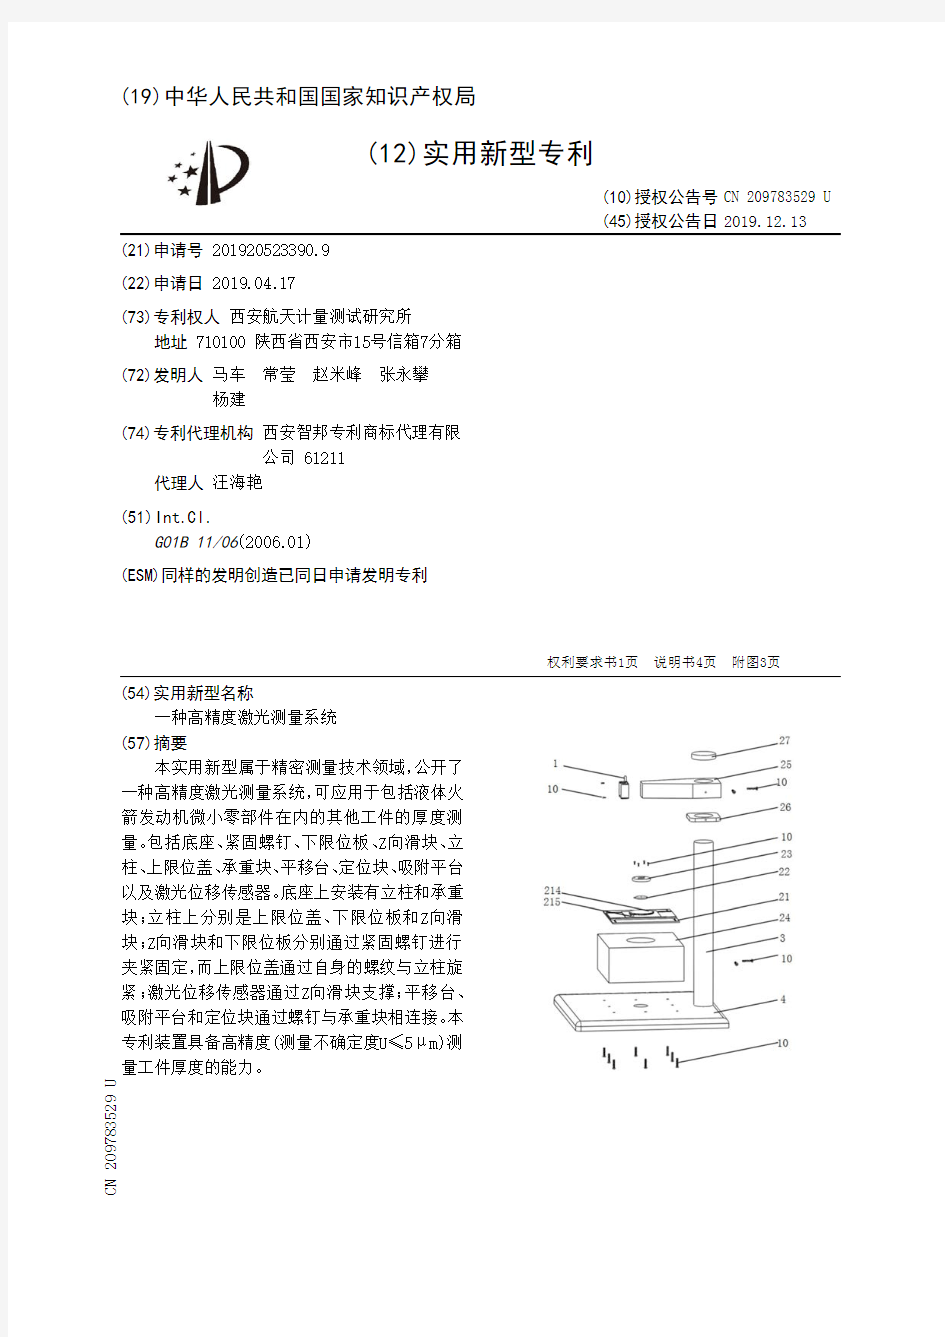 【CN209783529U】一种高精度激光测量系统【专利】